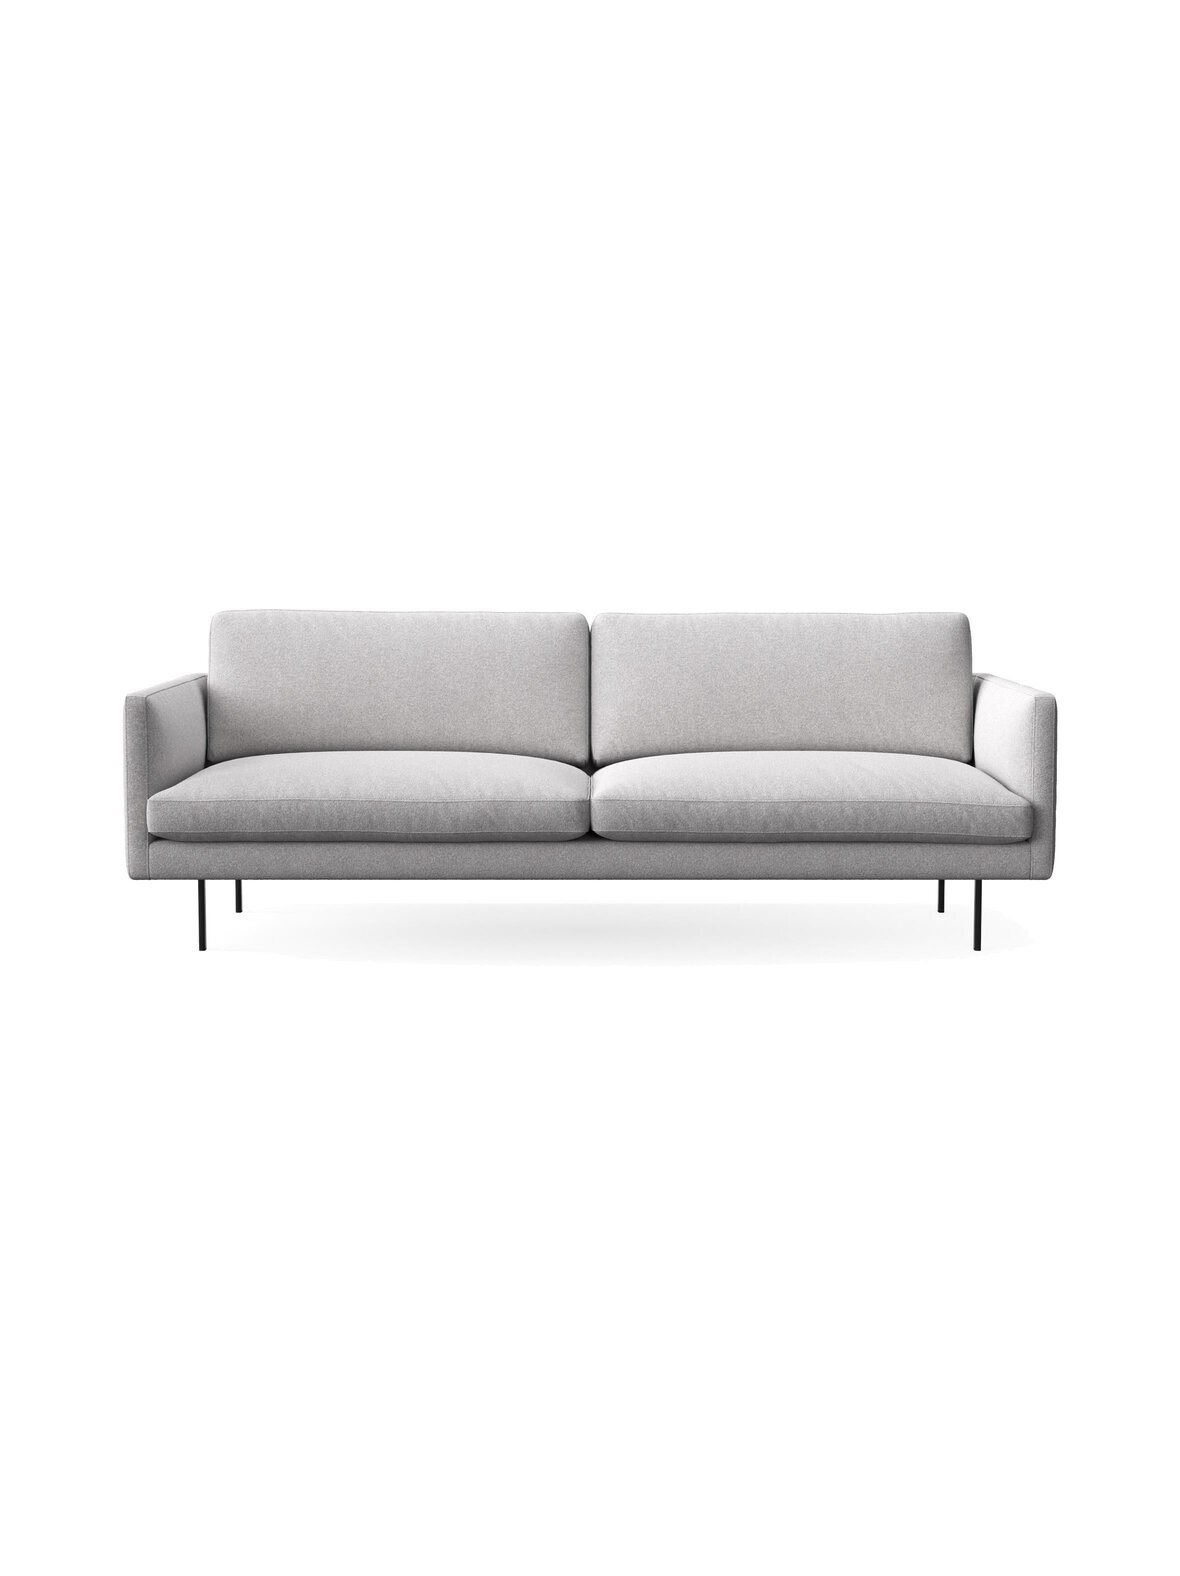 Adea Basel 200 -sohva